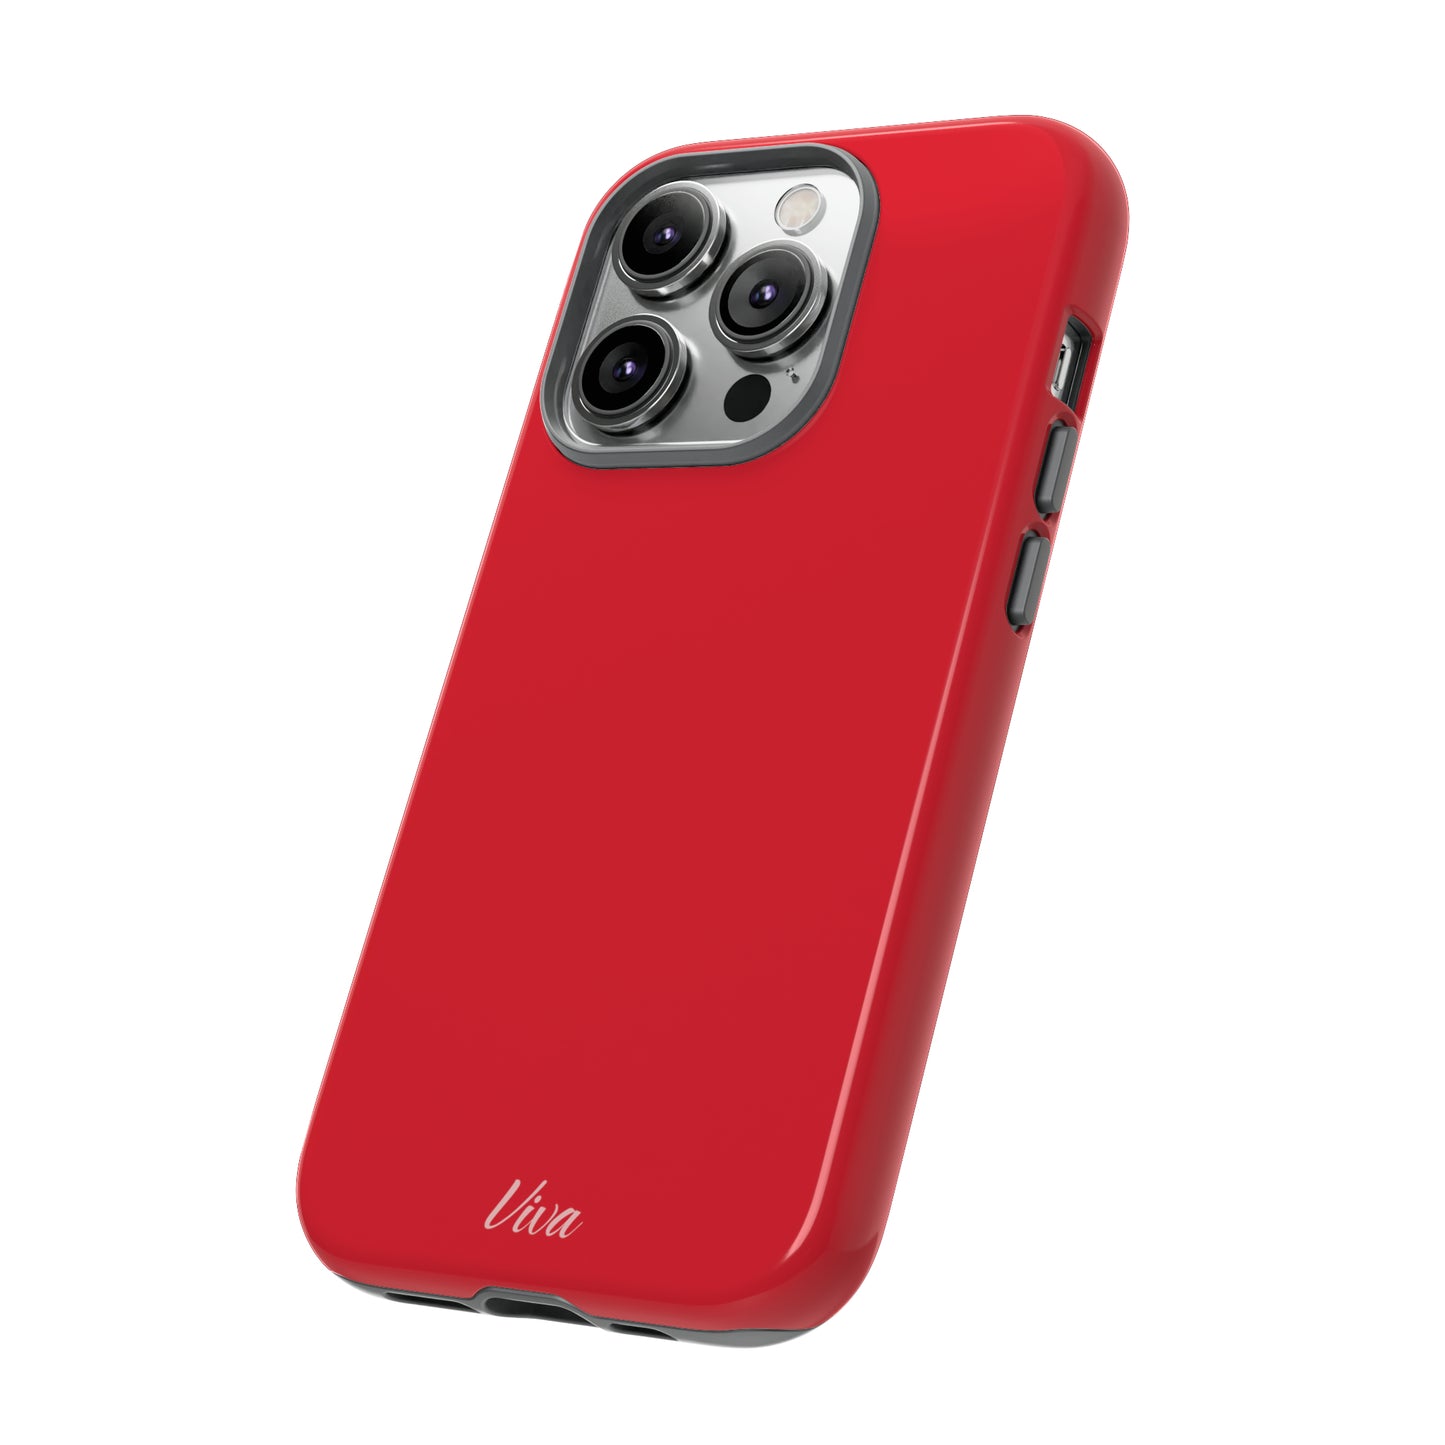 Alizarin Red Tough Phone Case